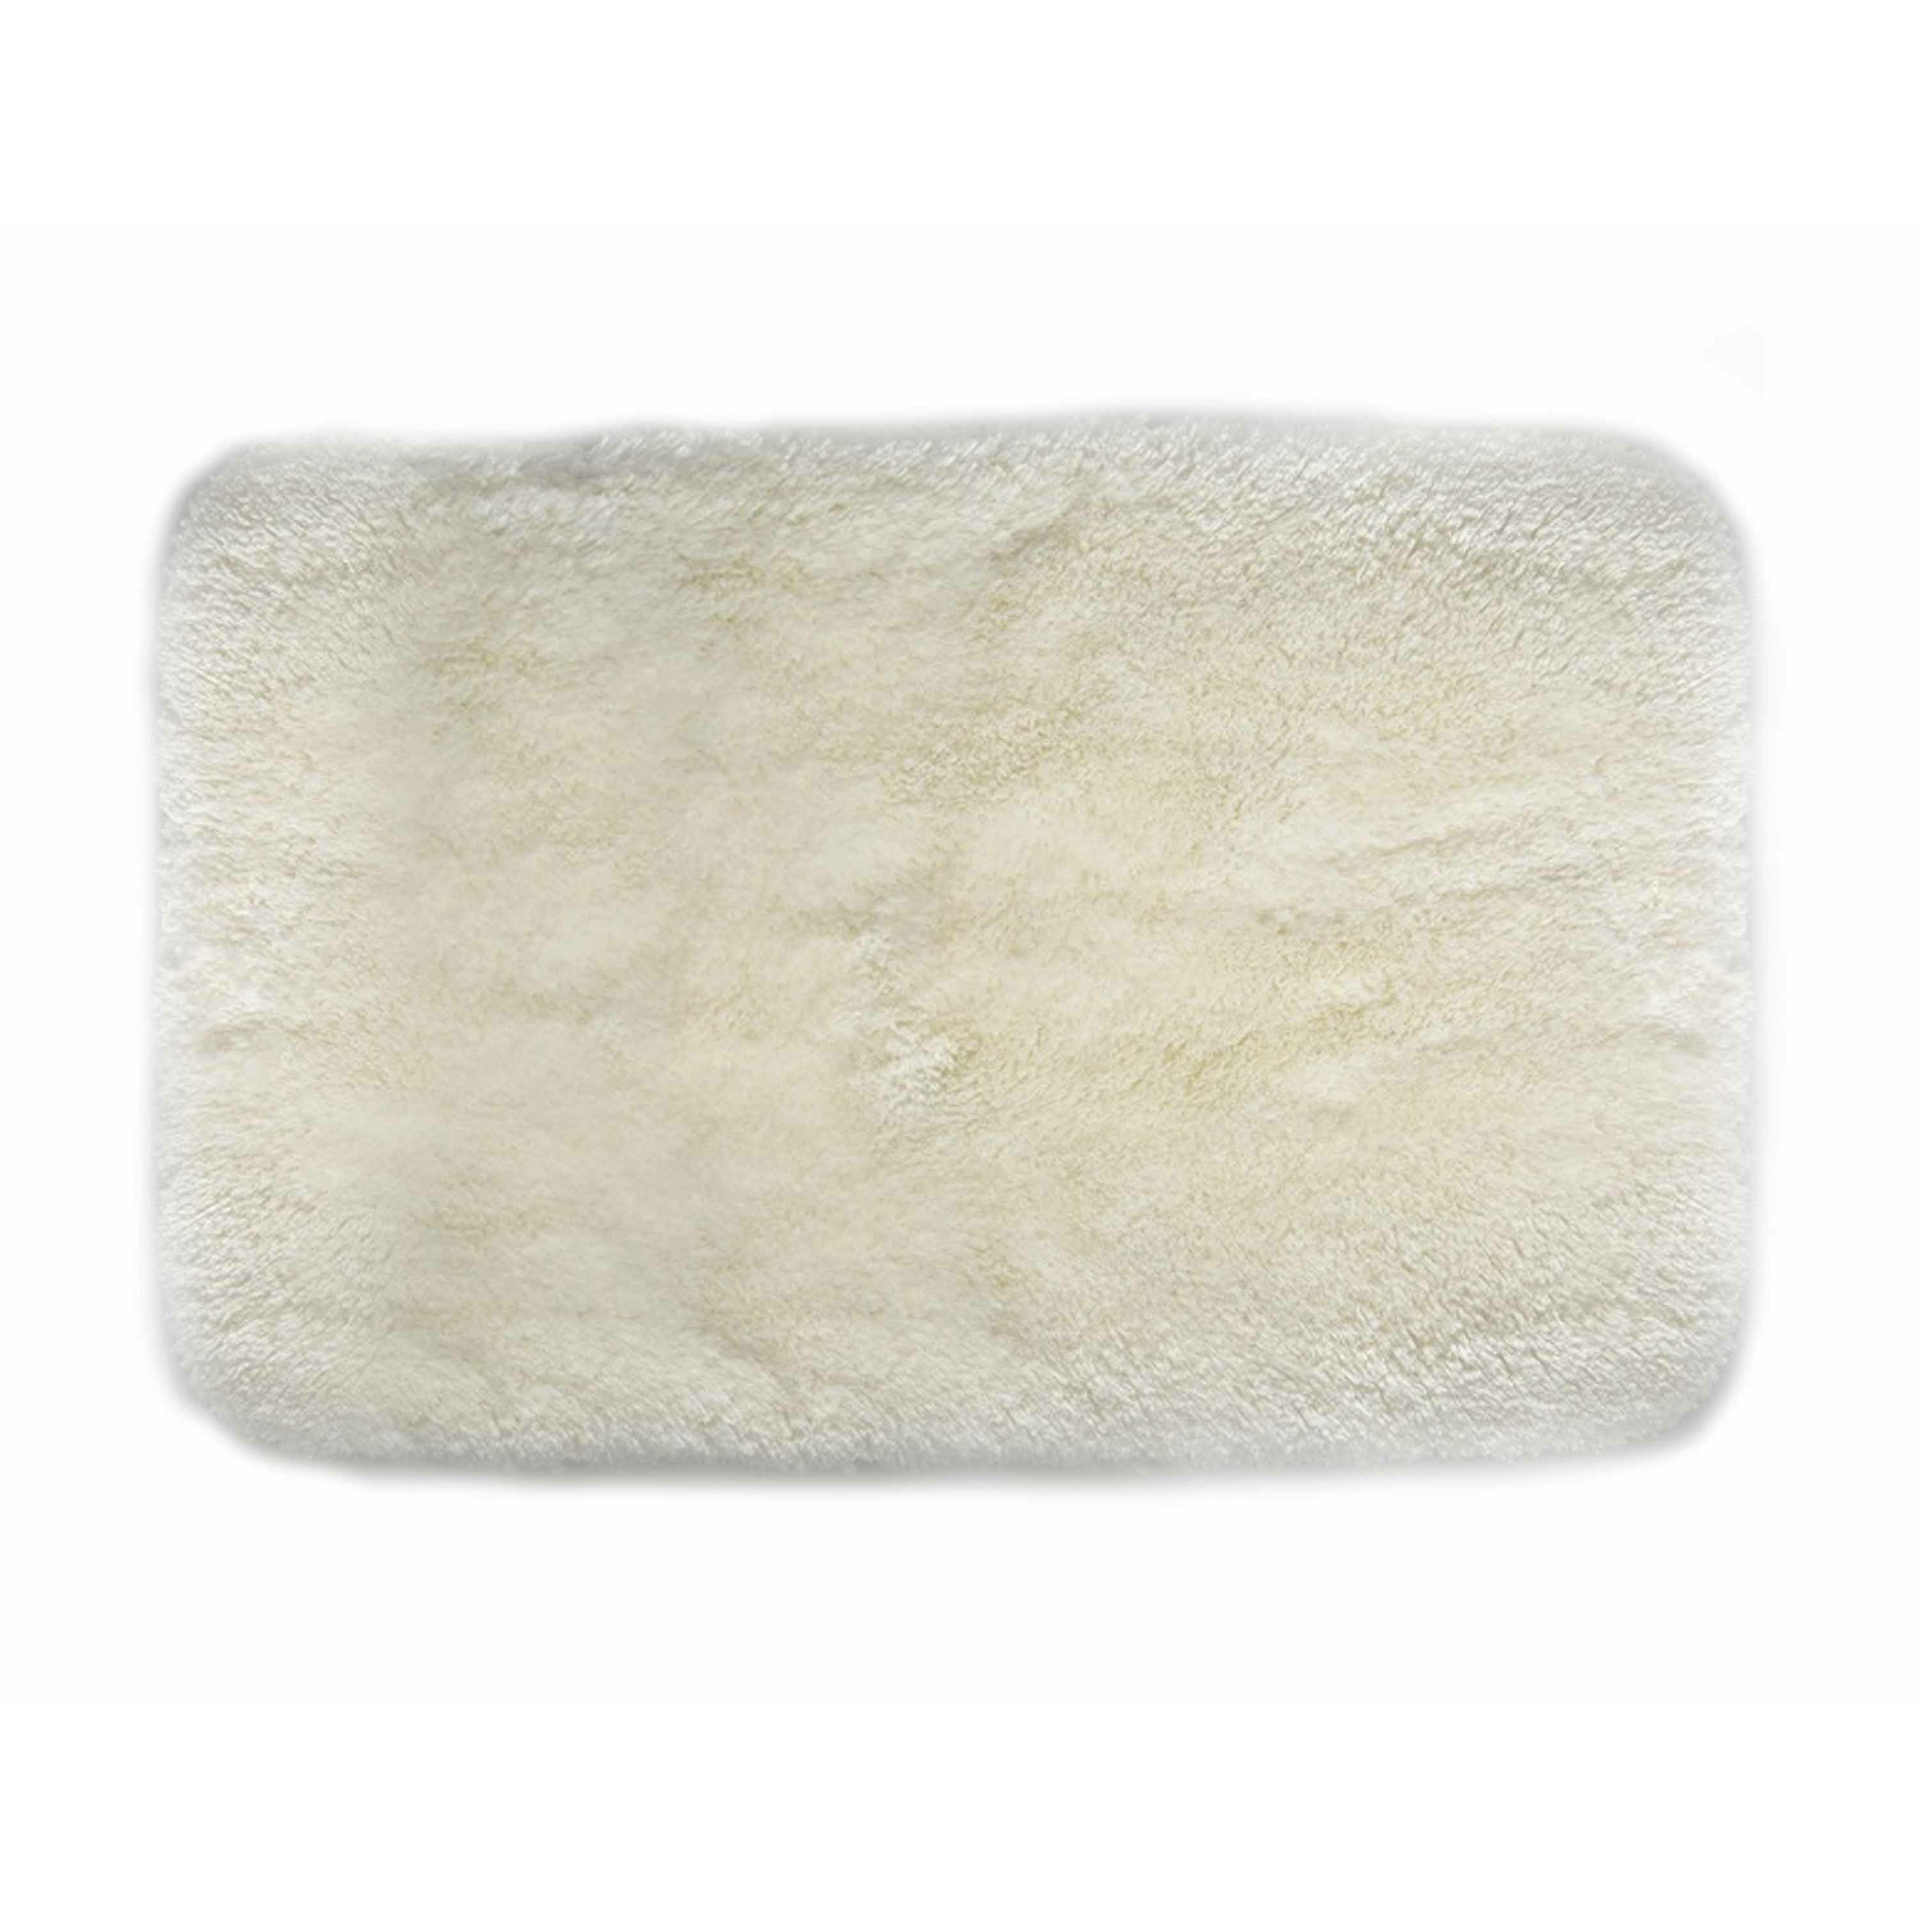 Spirella badkamer vloer kleedje-badmat tapijt hoogpolig en luxe uitvoering wit 40 x 60 cm Microfiber